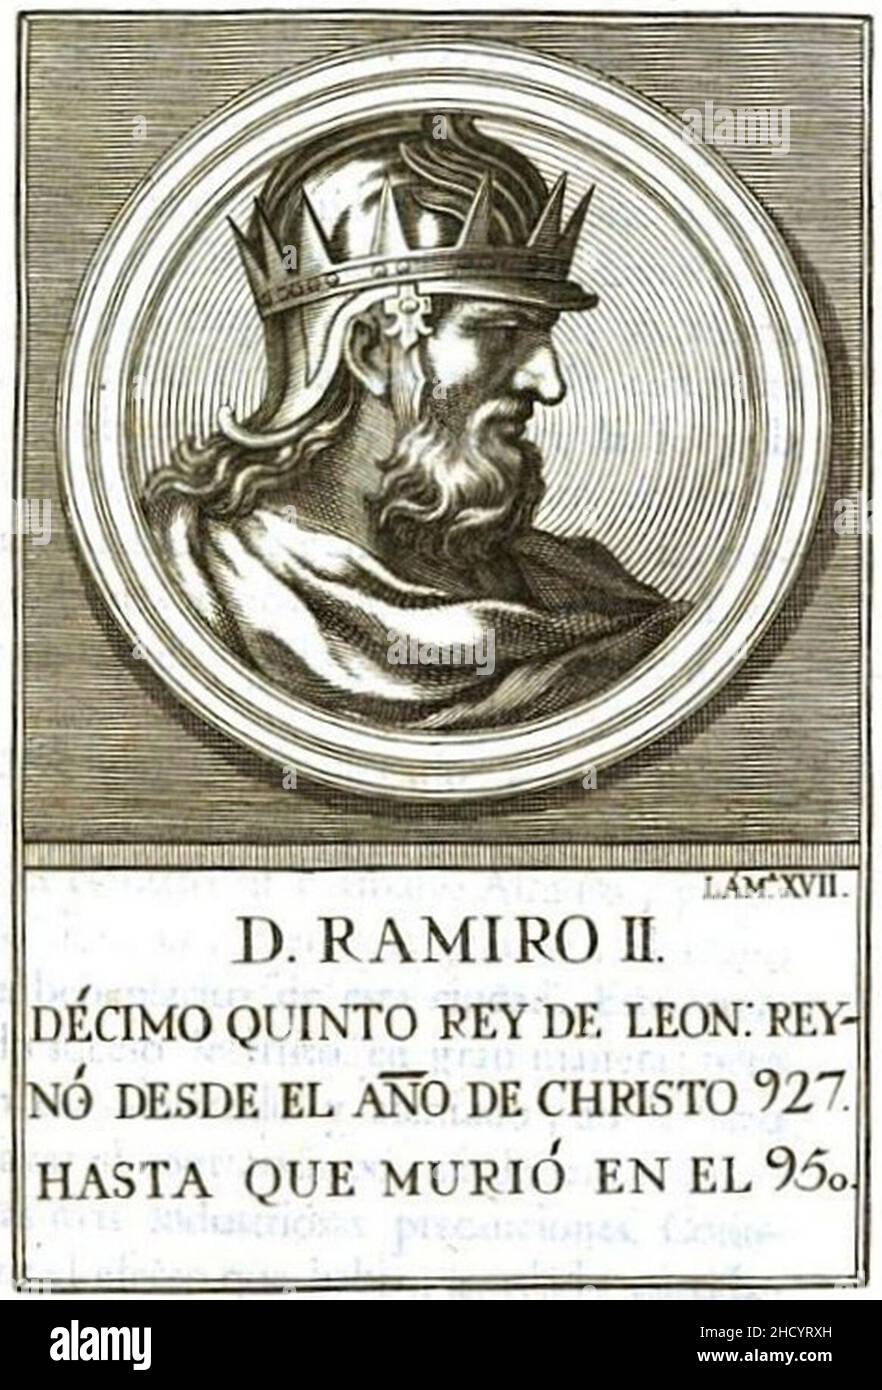 Retrito-095-Rey de León-Ramiro II Banque D'Images